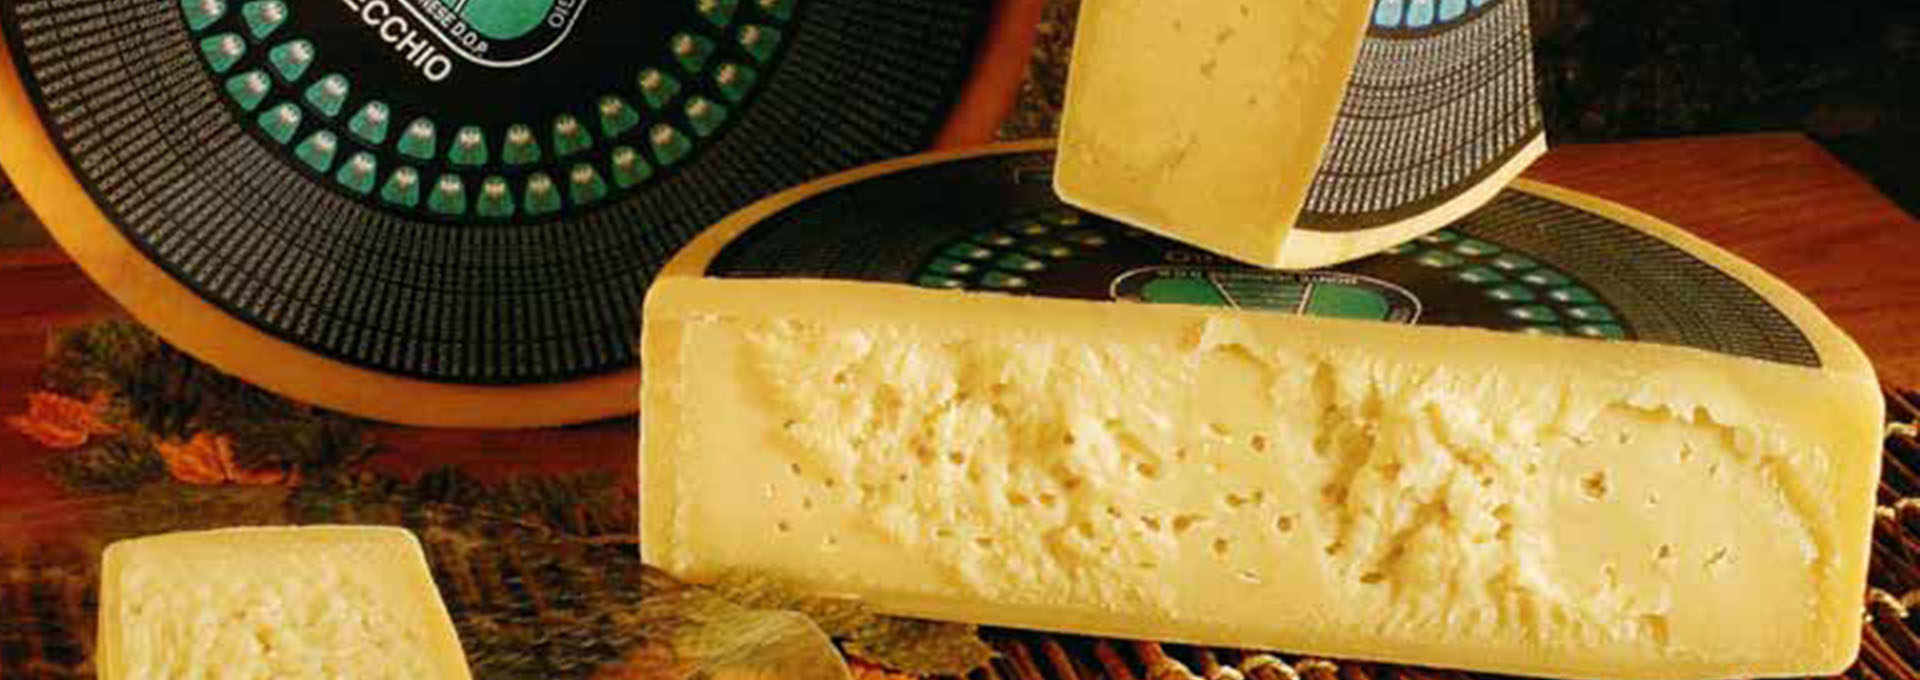 Veneto’s “Monte Veronese” Cheese